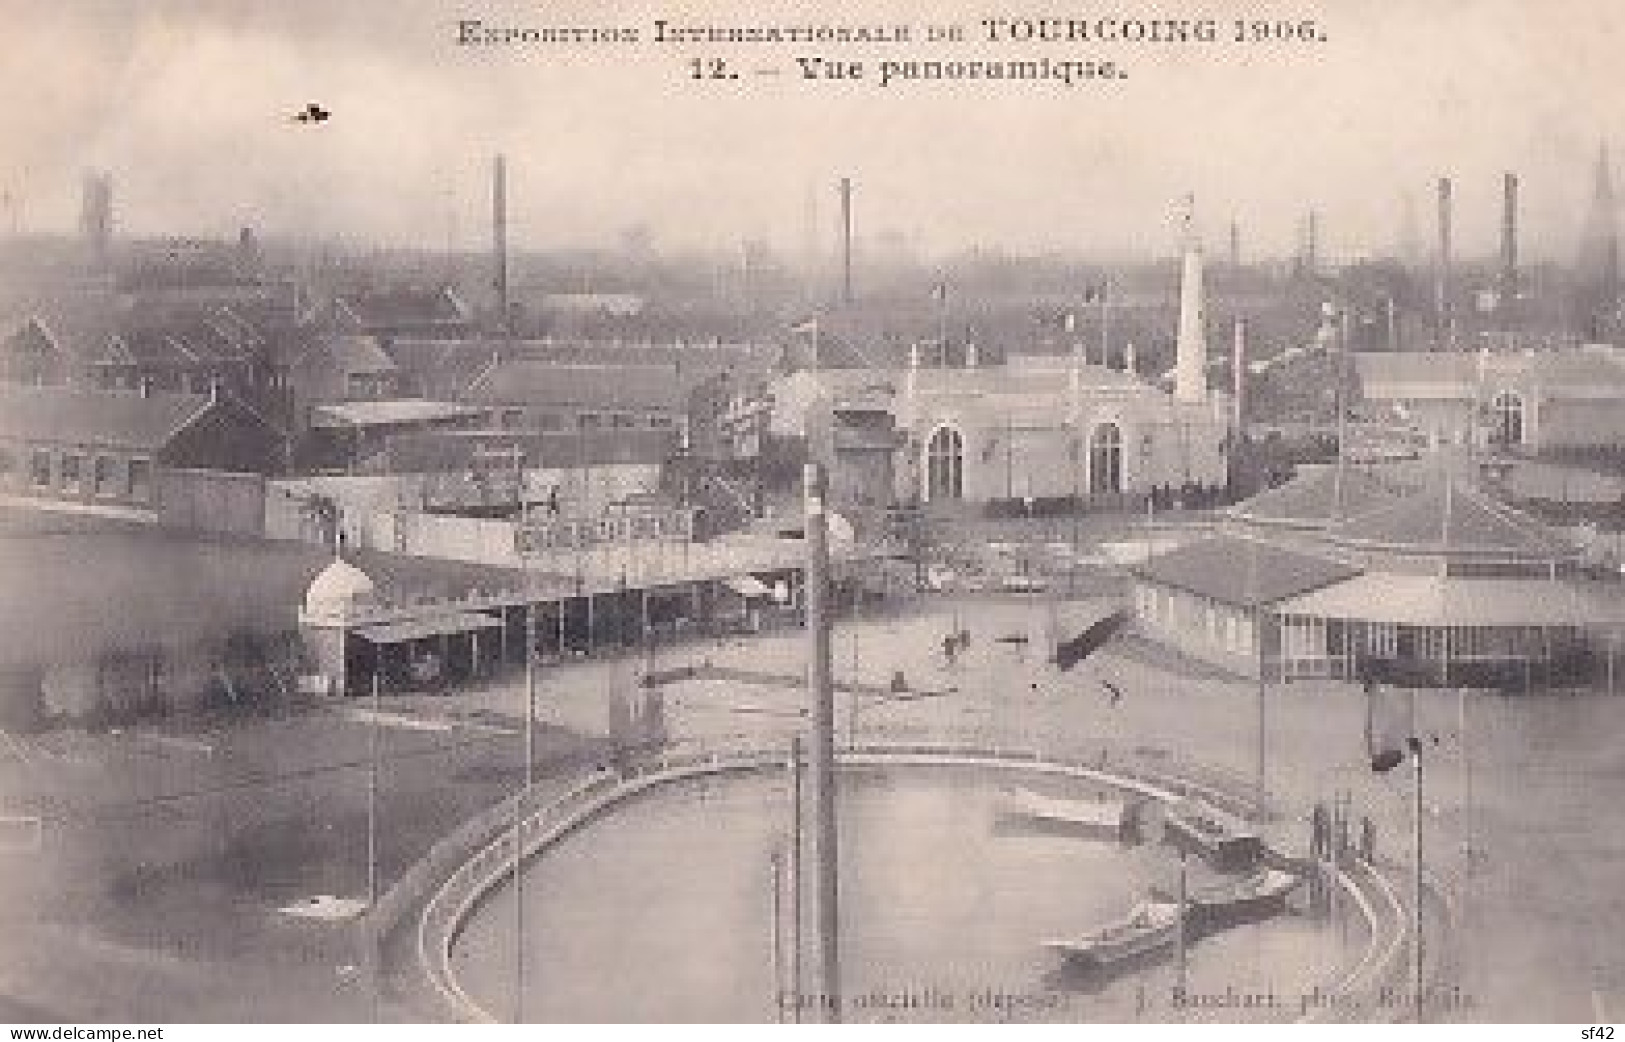 EXPOSITION DE TOURCOING 1906                      VUE PANORAMIQUE   +  VIGNETTE - Tourcoing